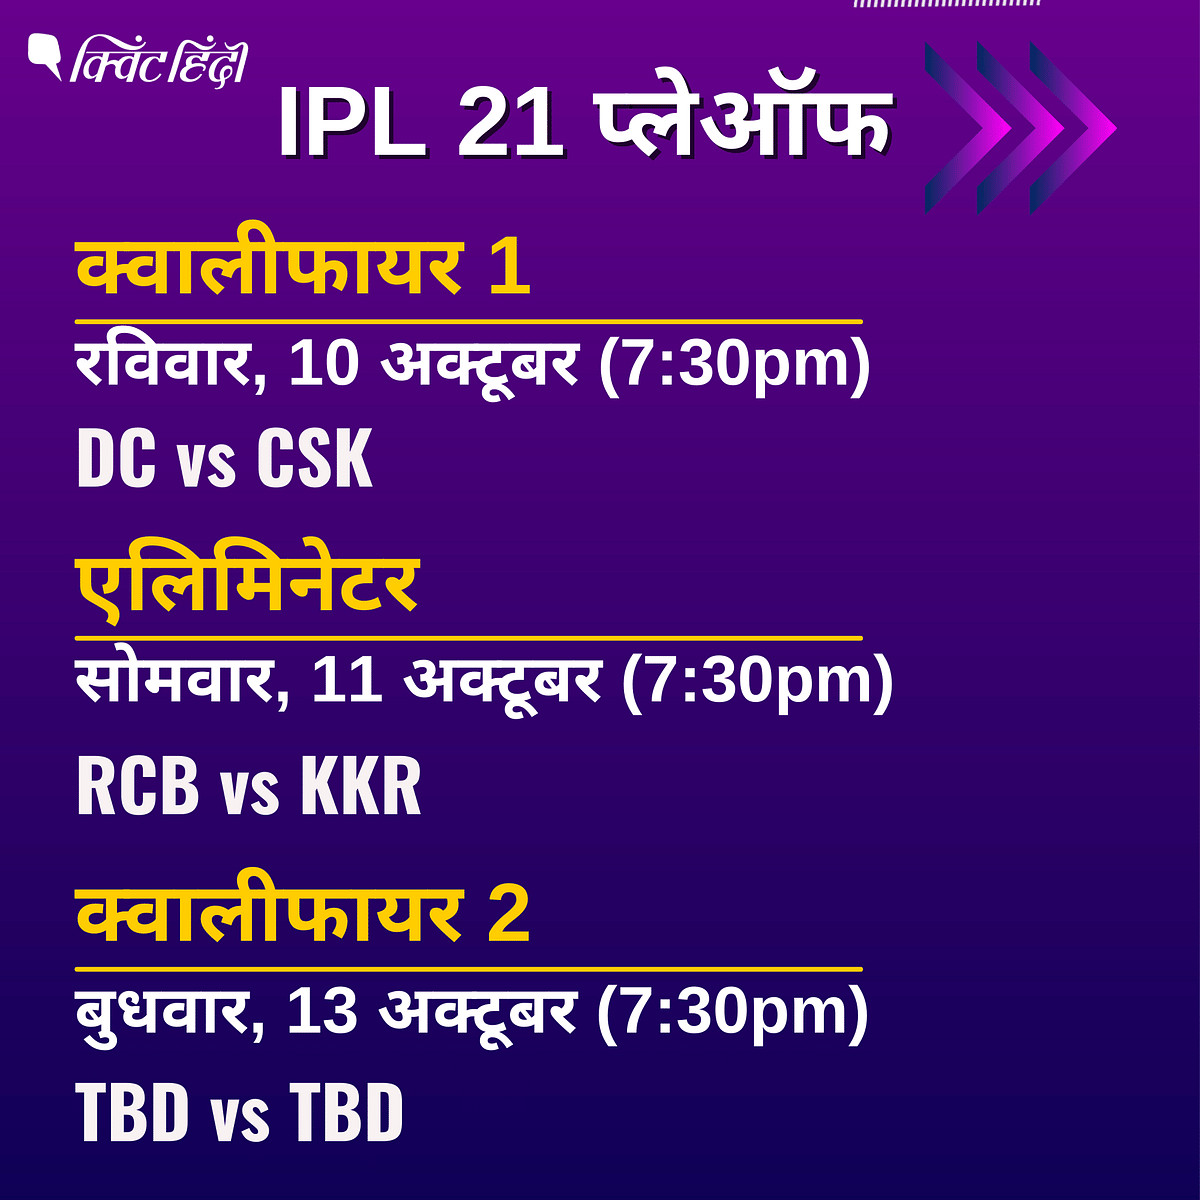 IPL 21 लीग स्टेज के अंतिम मैच में पांच बार की चैंपियन मुंबई इंडियंस  बाहर हो गई. 